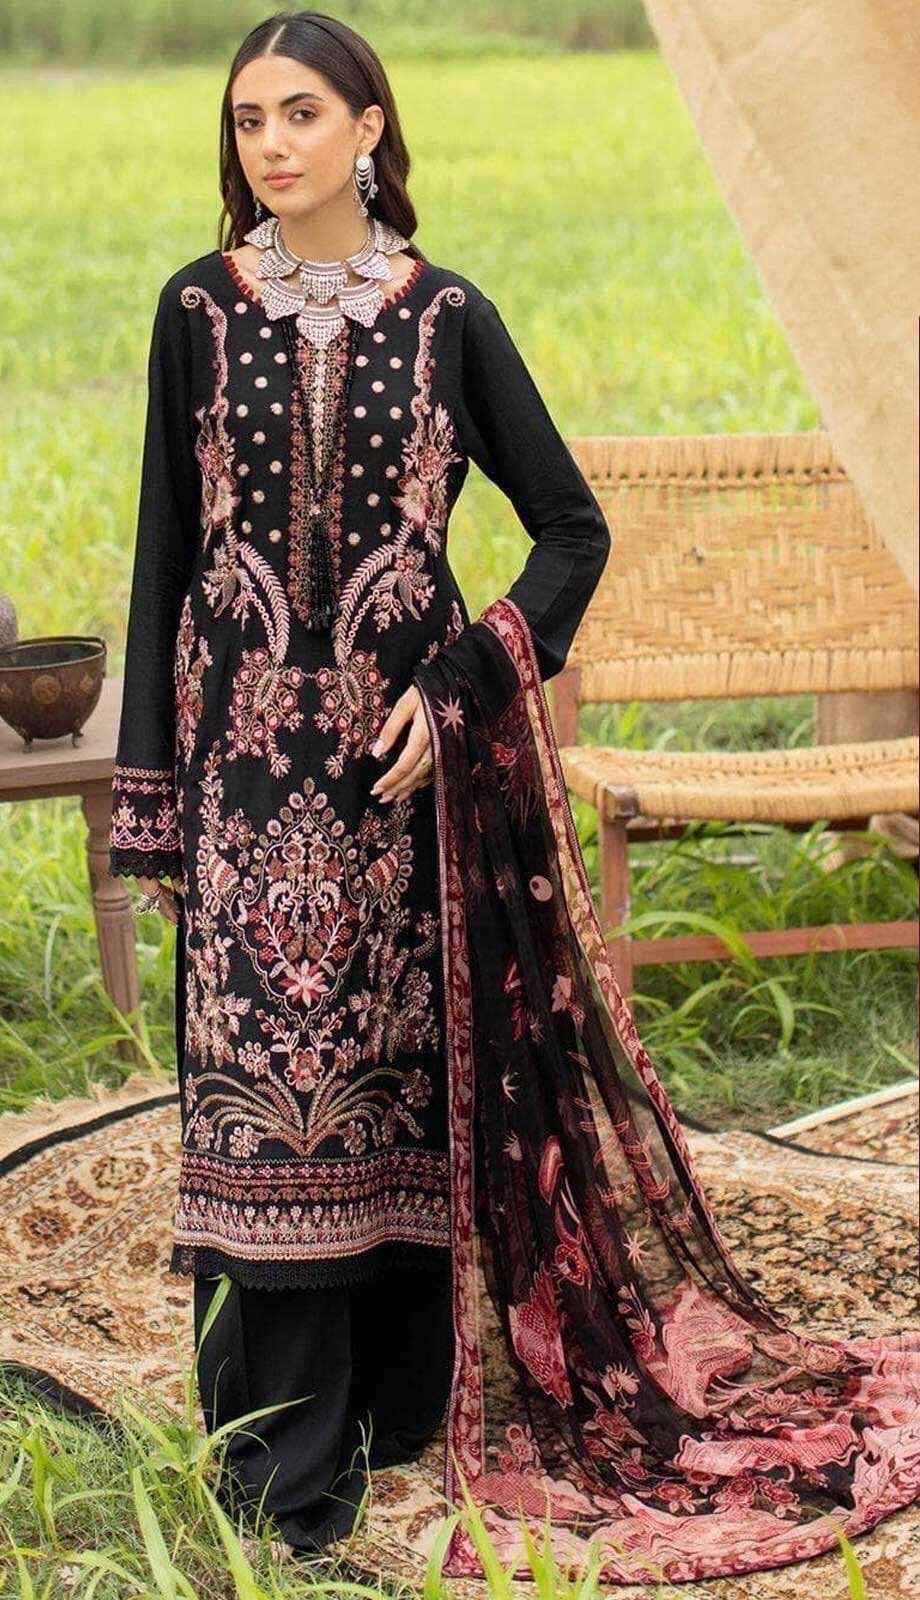 Zarqash Z 3041 Rayon Pakistani Suits Wholesale catalog